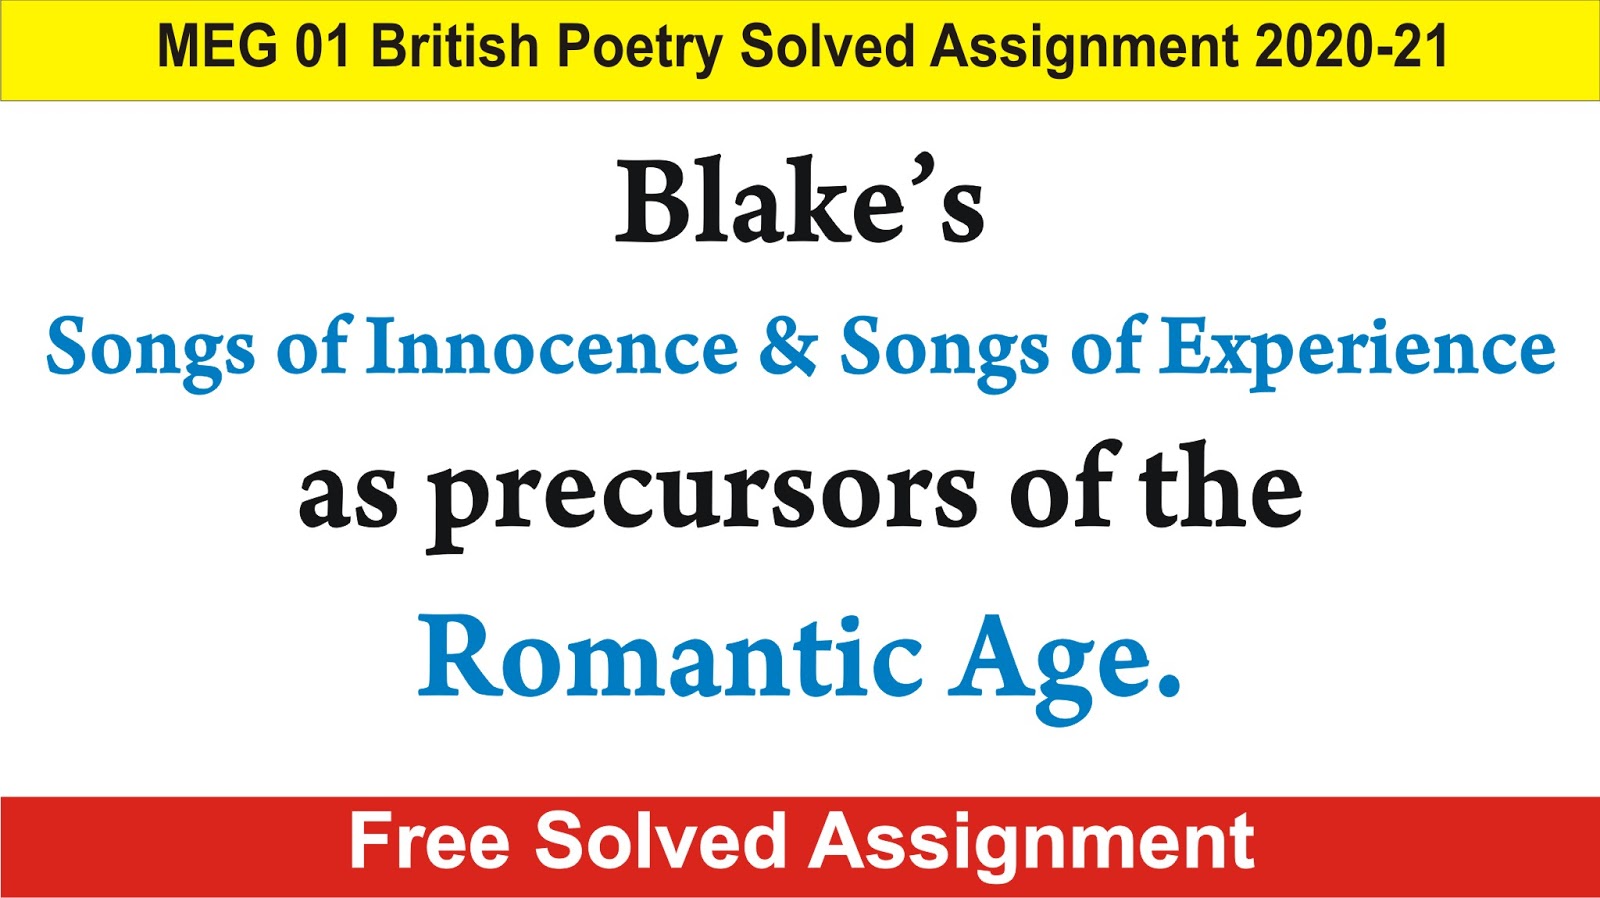 songs of innocence poem by william blake